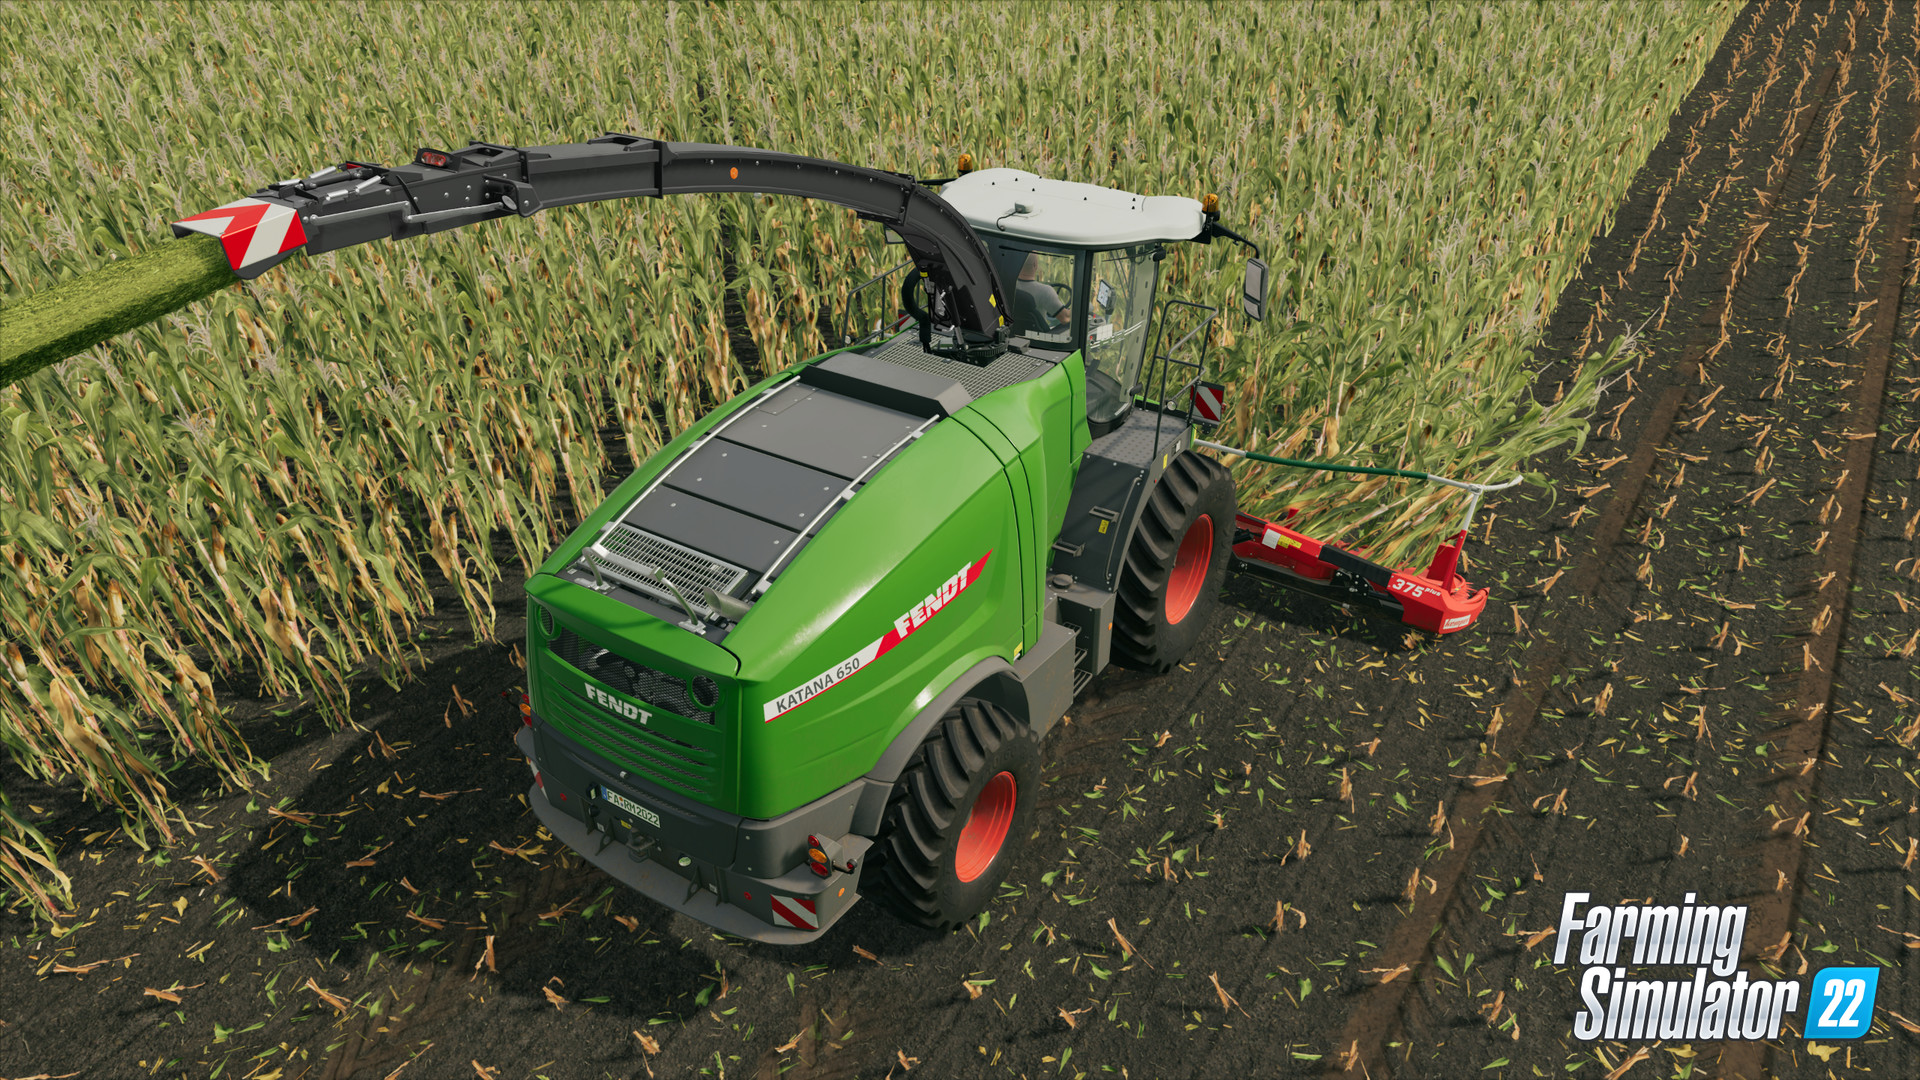 Farming Simulator 22 Year 1 Bundle EU Steam CD Key